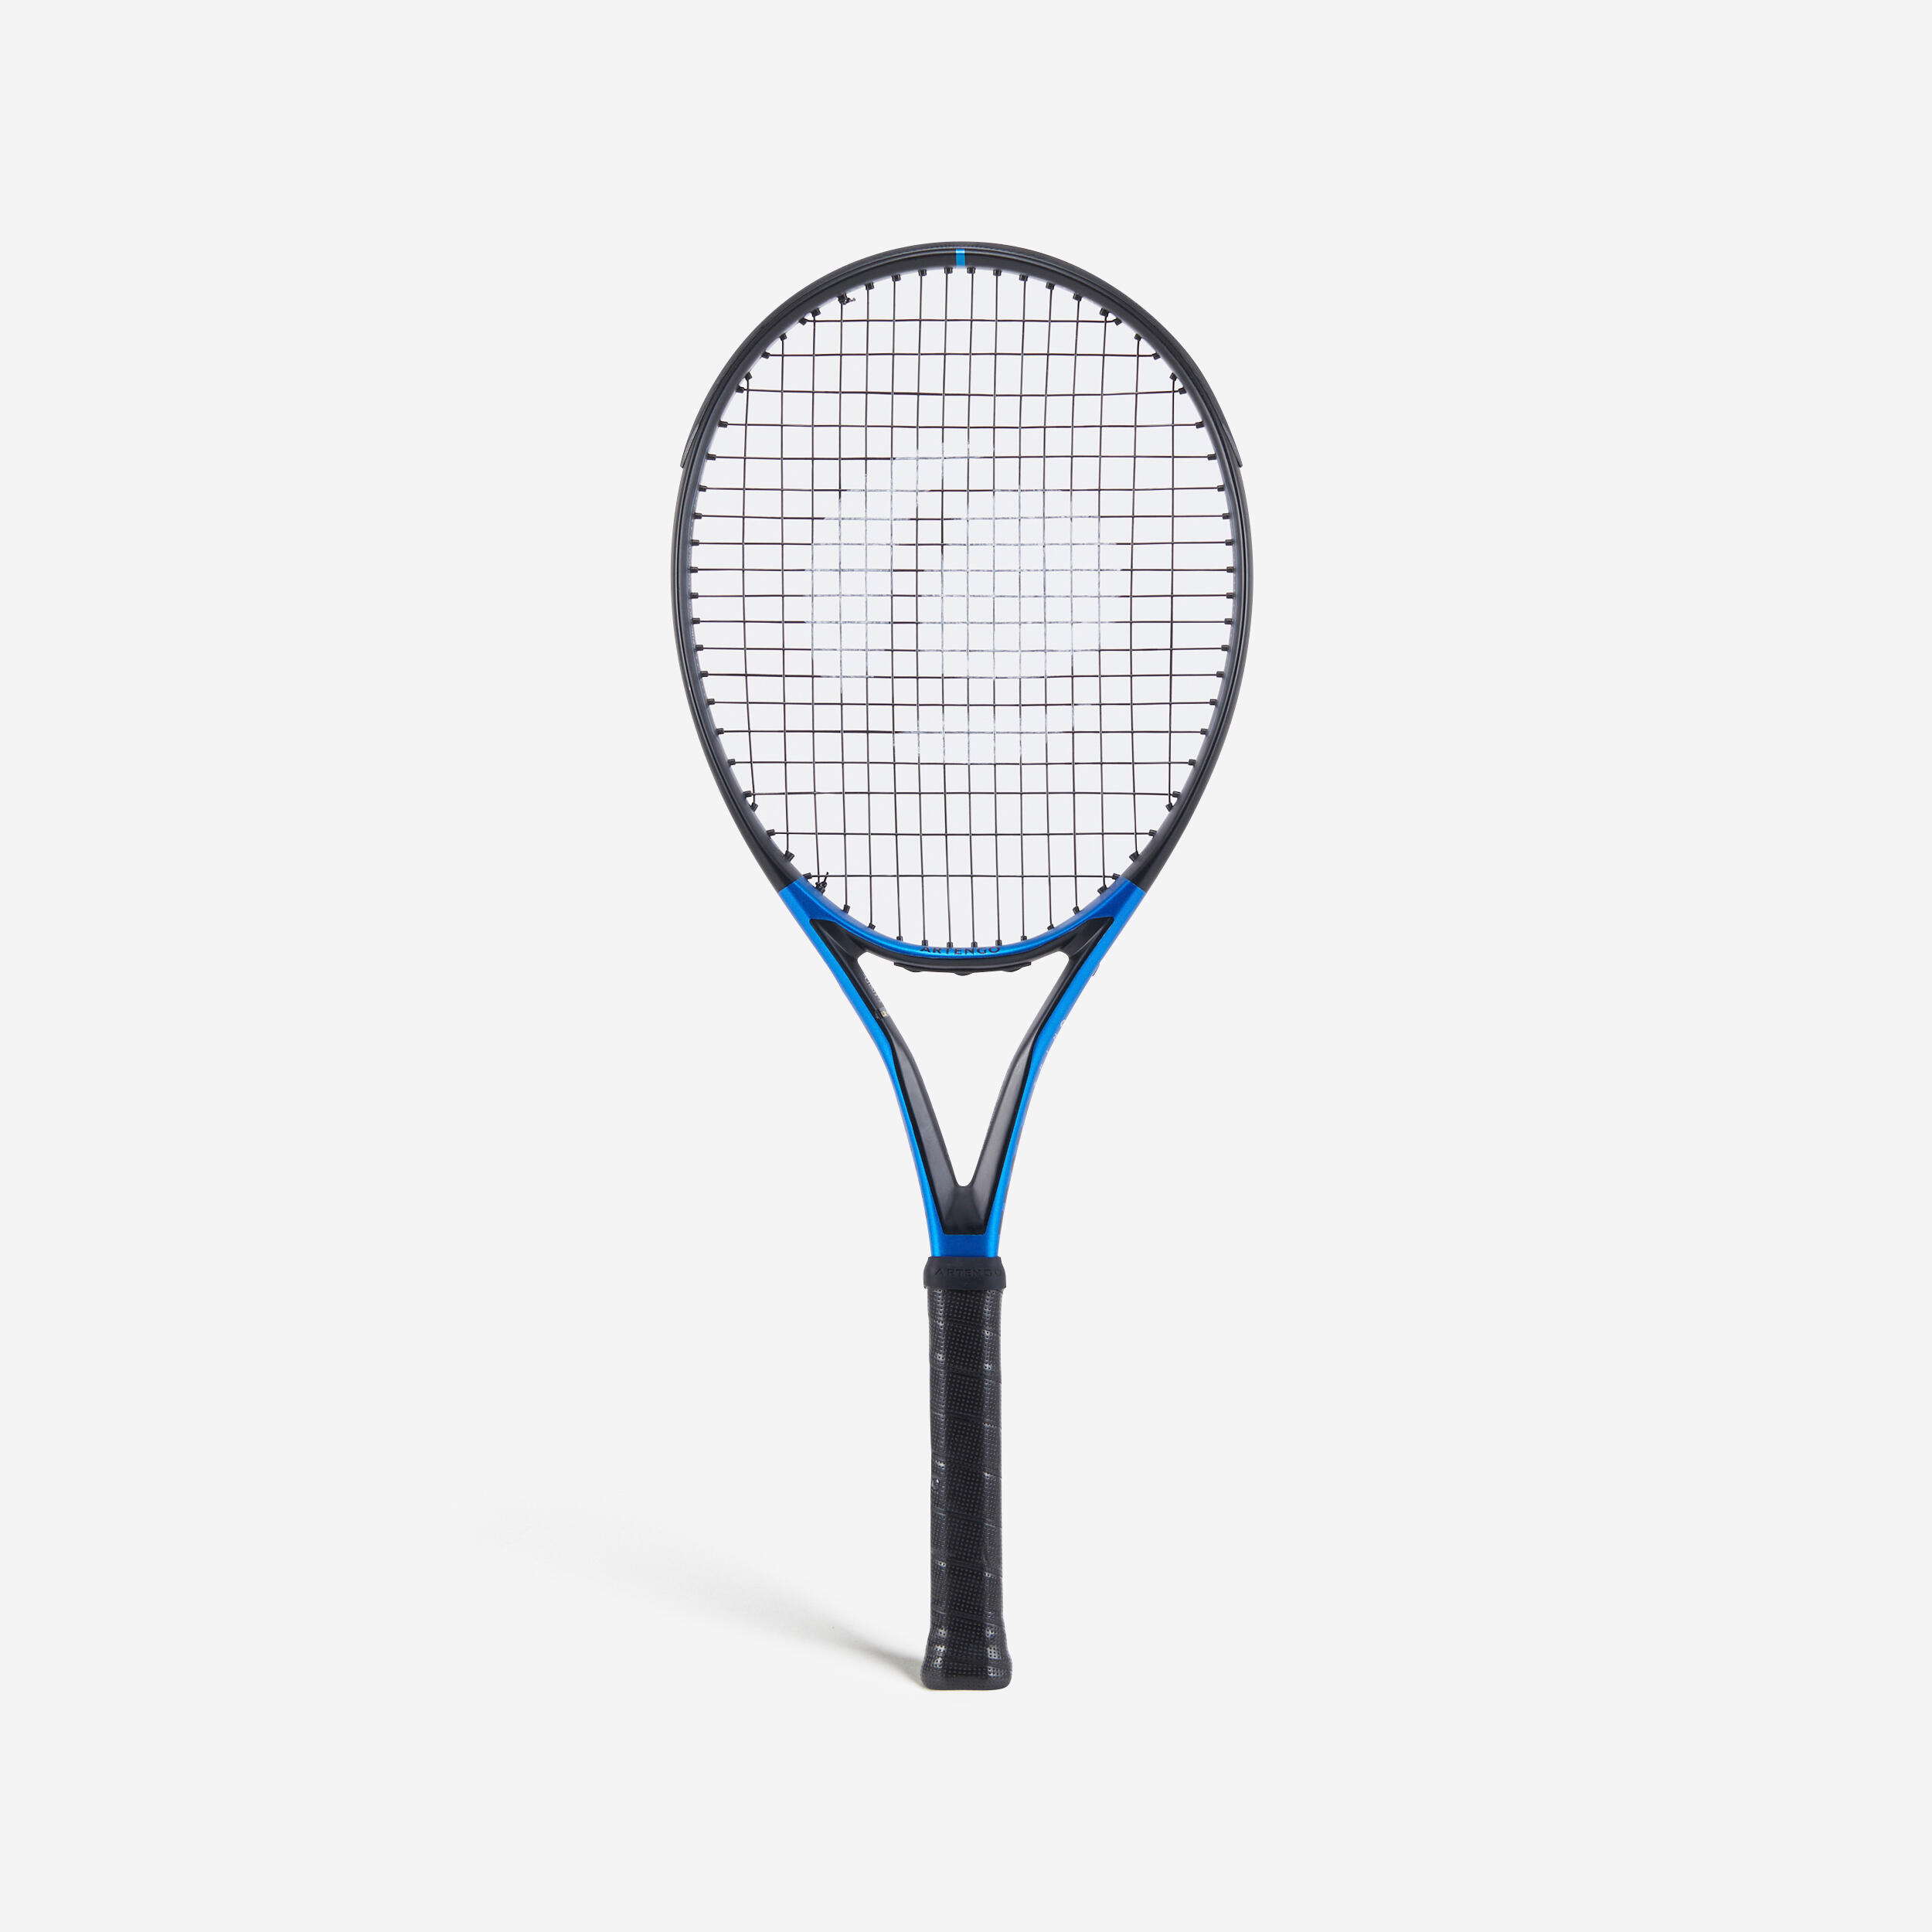 Decathlon | Racchetta tennis adulto TR 930 SPIN LITE nero-azzurro |  Artengo